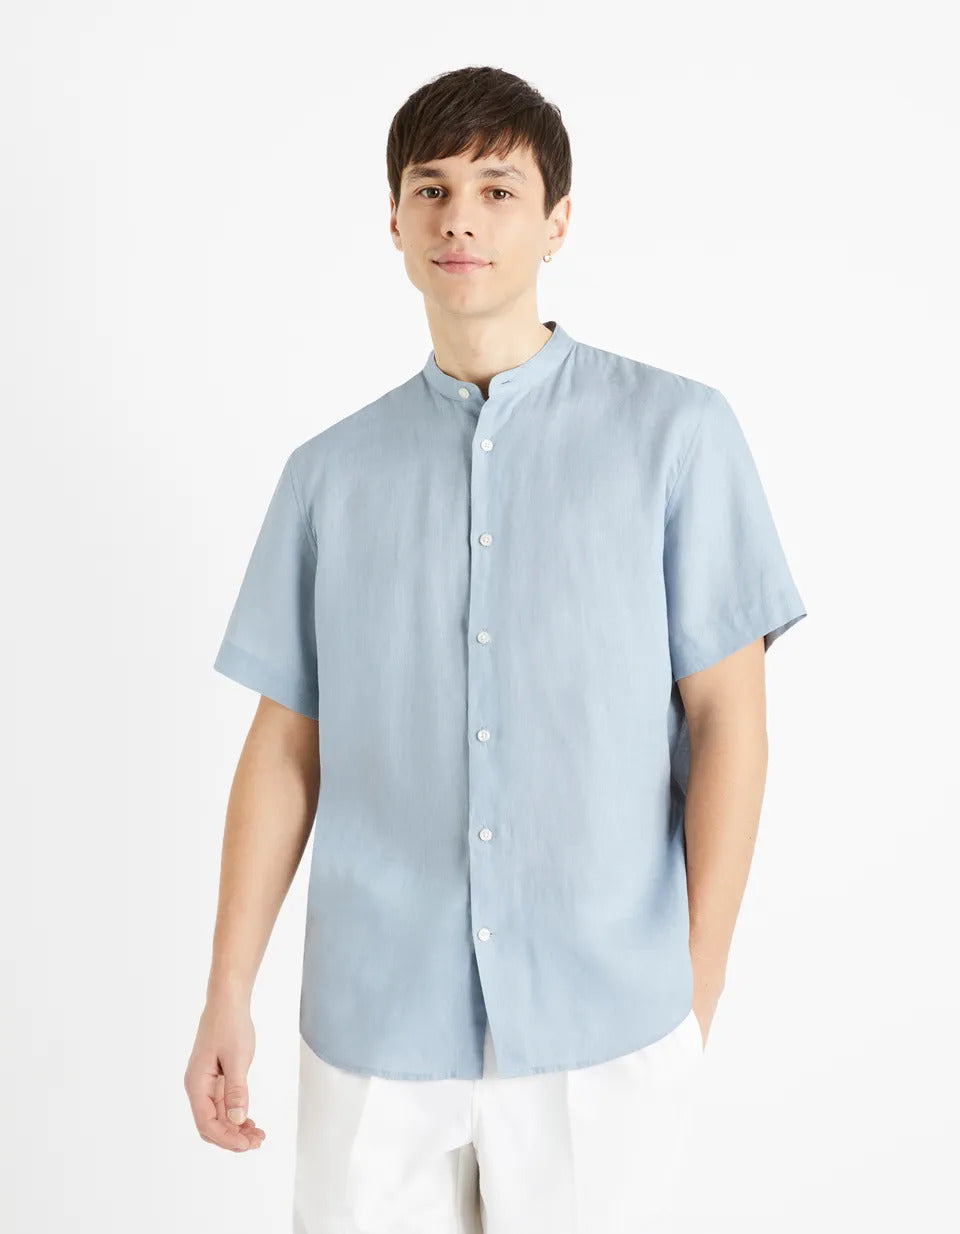 Regular Mao Collar Shirt 100% Linen - Blue Grey - 01